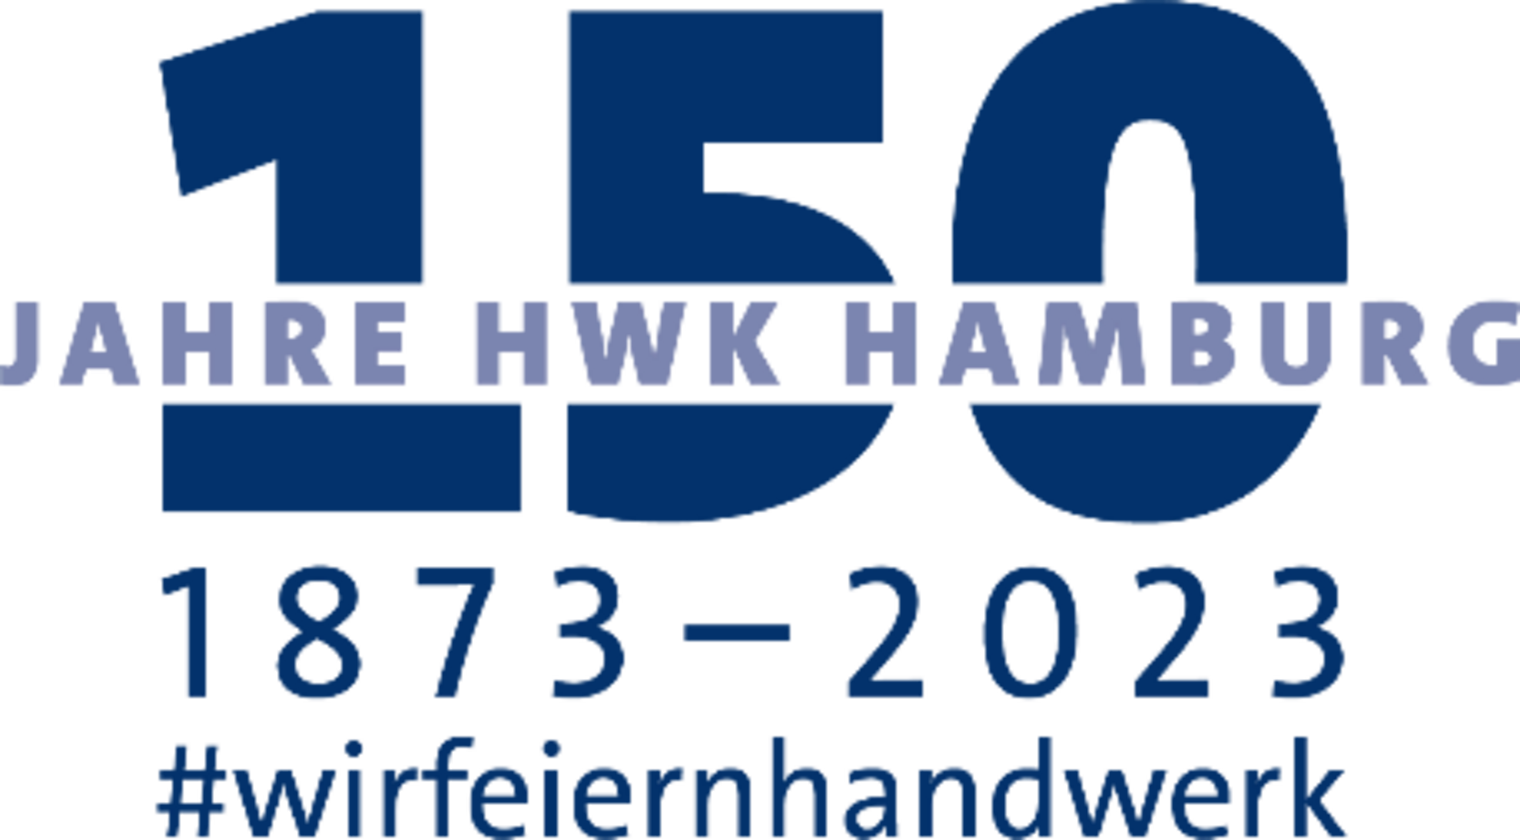 150 Jahre Handwerkskammer Hamburg #wirfeiernhamburg